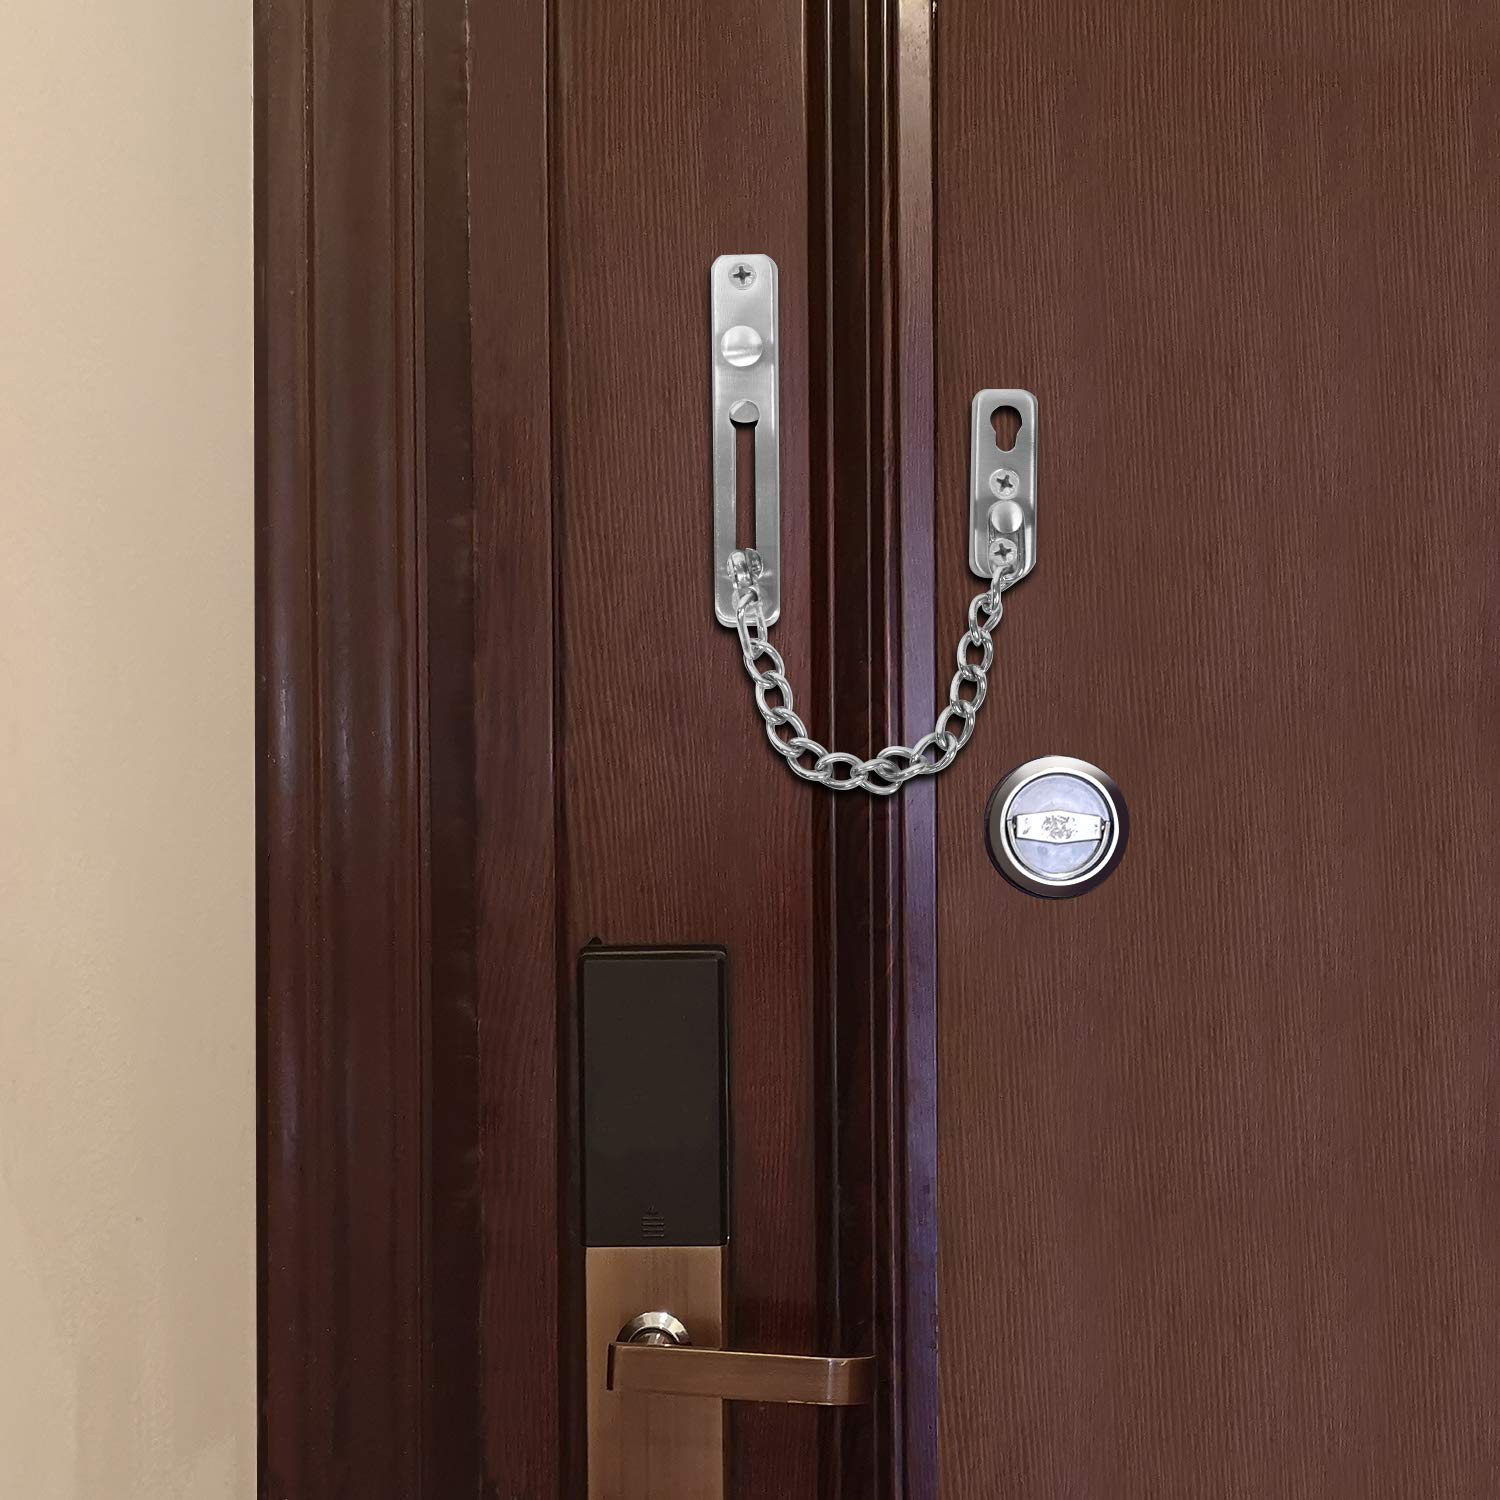 Dây chốt cửa an toàn dây xích chuẩn Inox SUS304 gắn cửa hợp cho chung cư nhà phố - khóa...